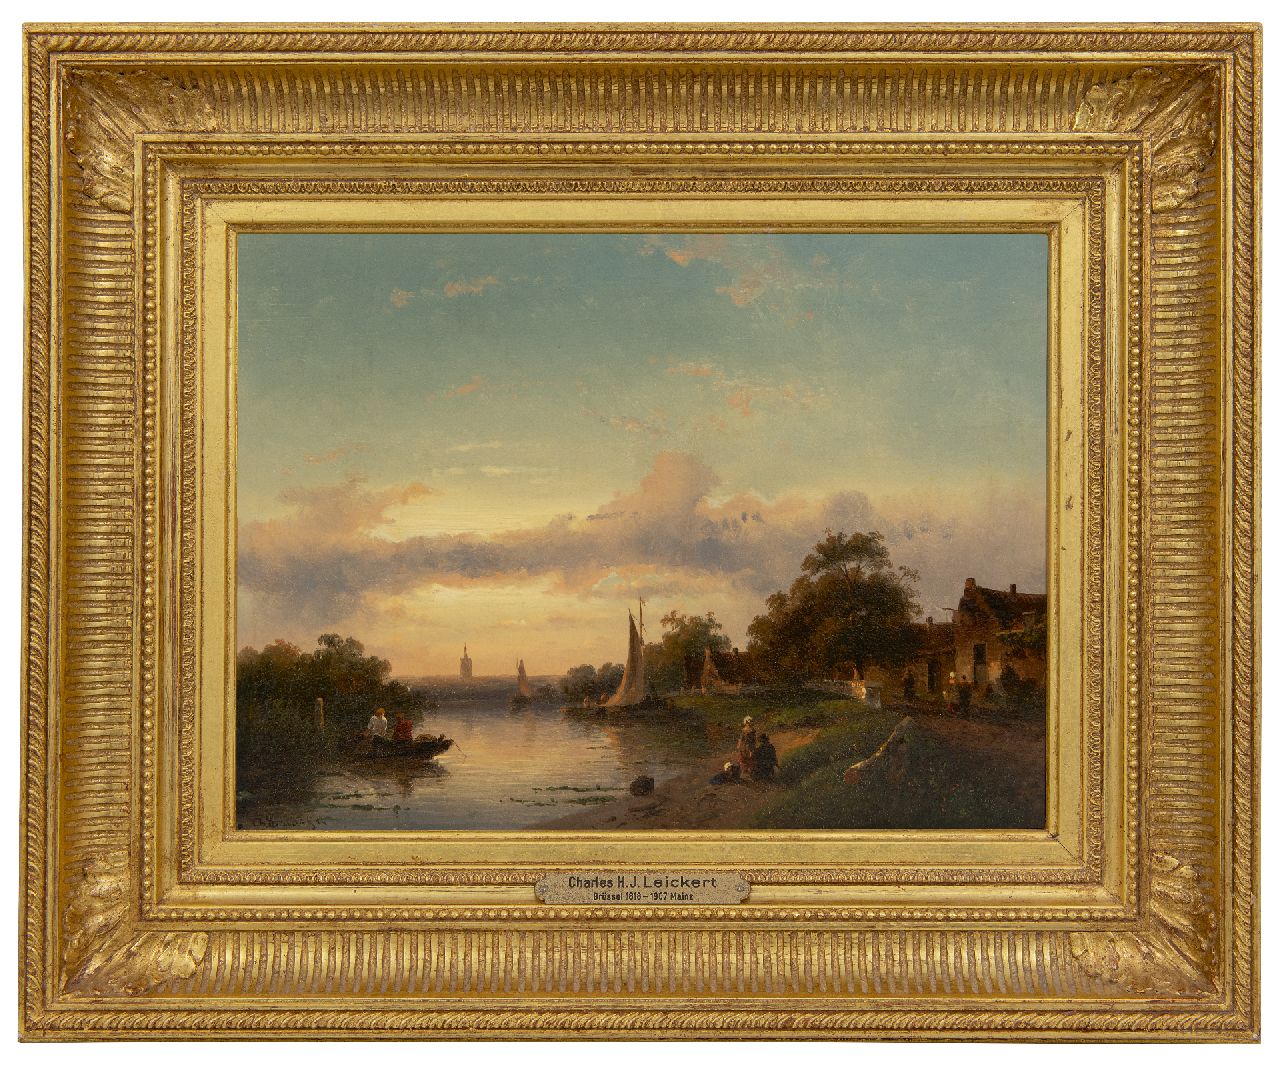 Leickert C.H.J.  | 'Charles' Henri Joseph Leickert | Schilderijen te koop aangeboden | Zomers riviergezicht bij ondergaande zon, olieverf op paneel 23,0 x 31,6 cm, gesigneerd linksonder en gedateerd '54